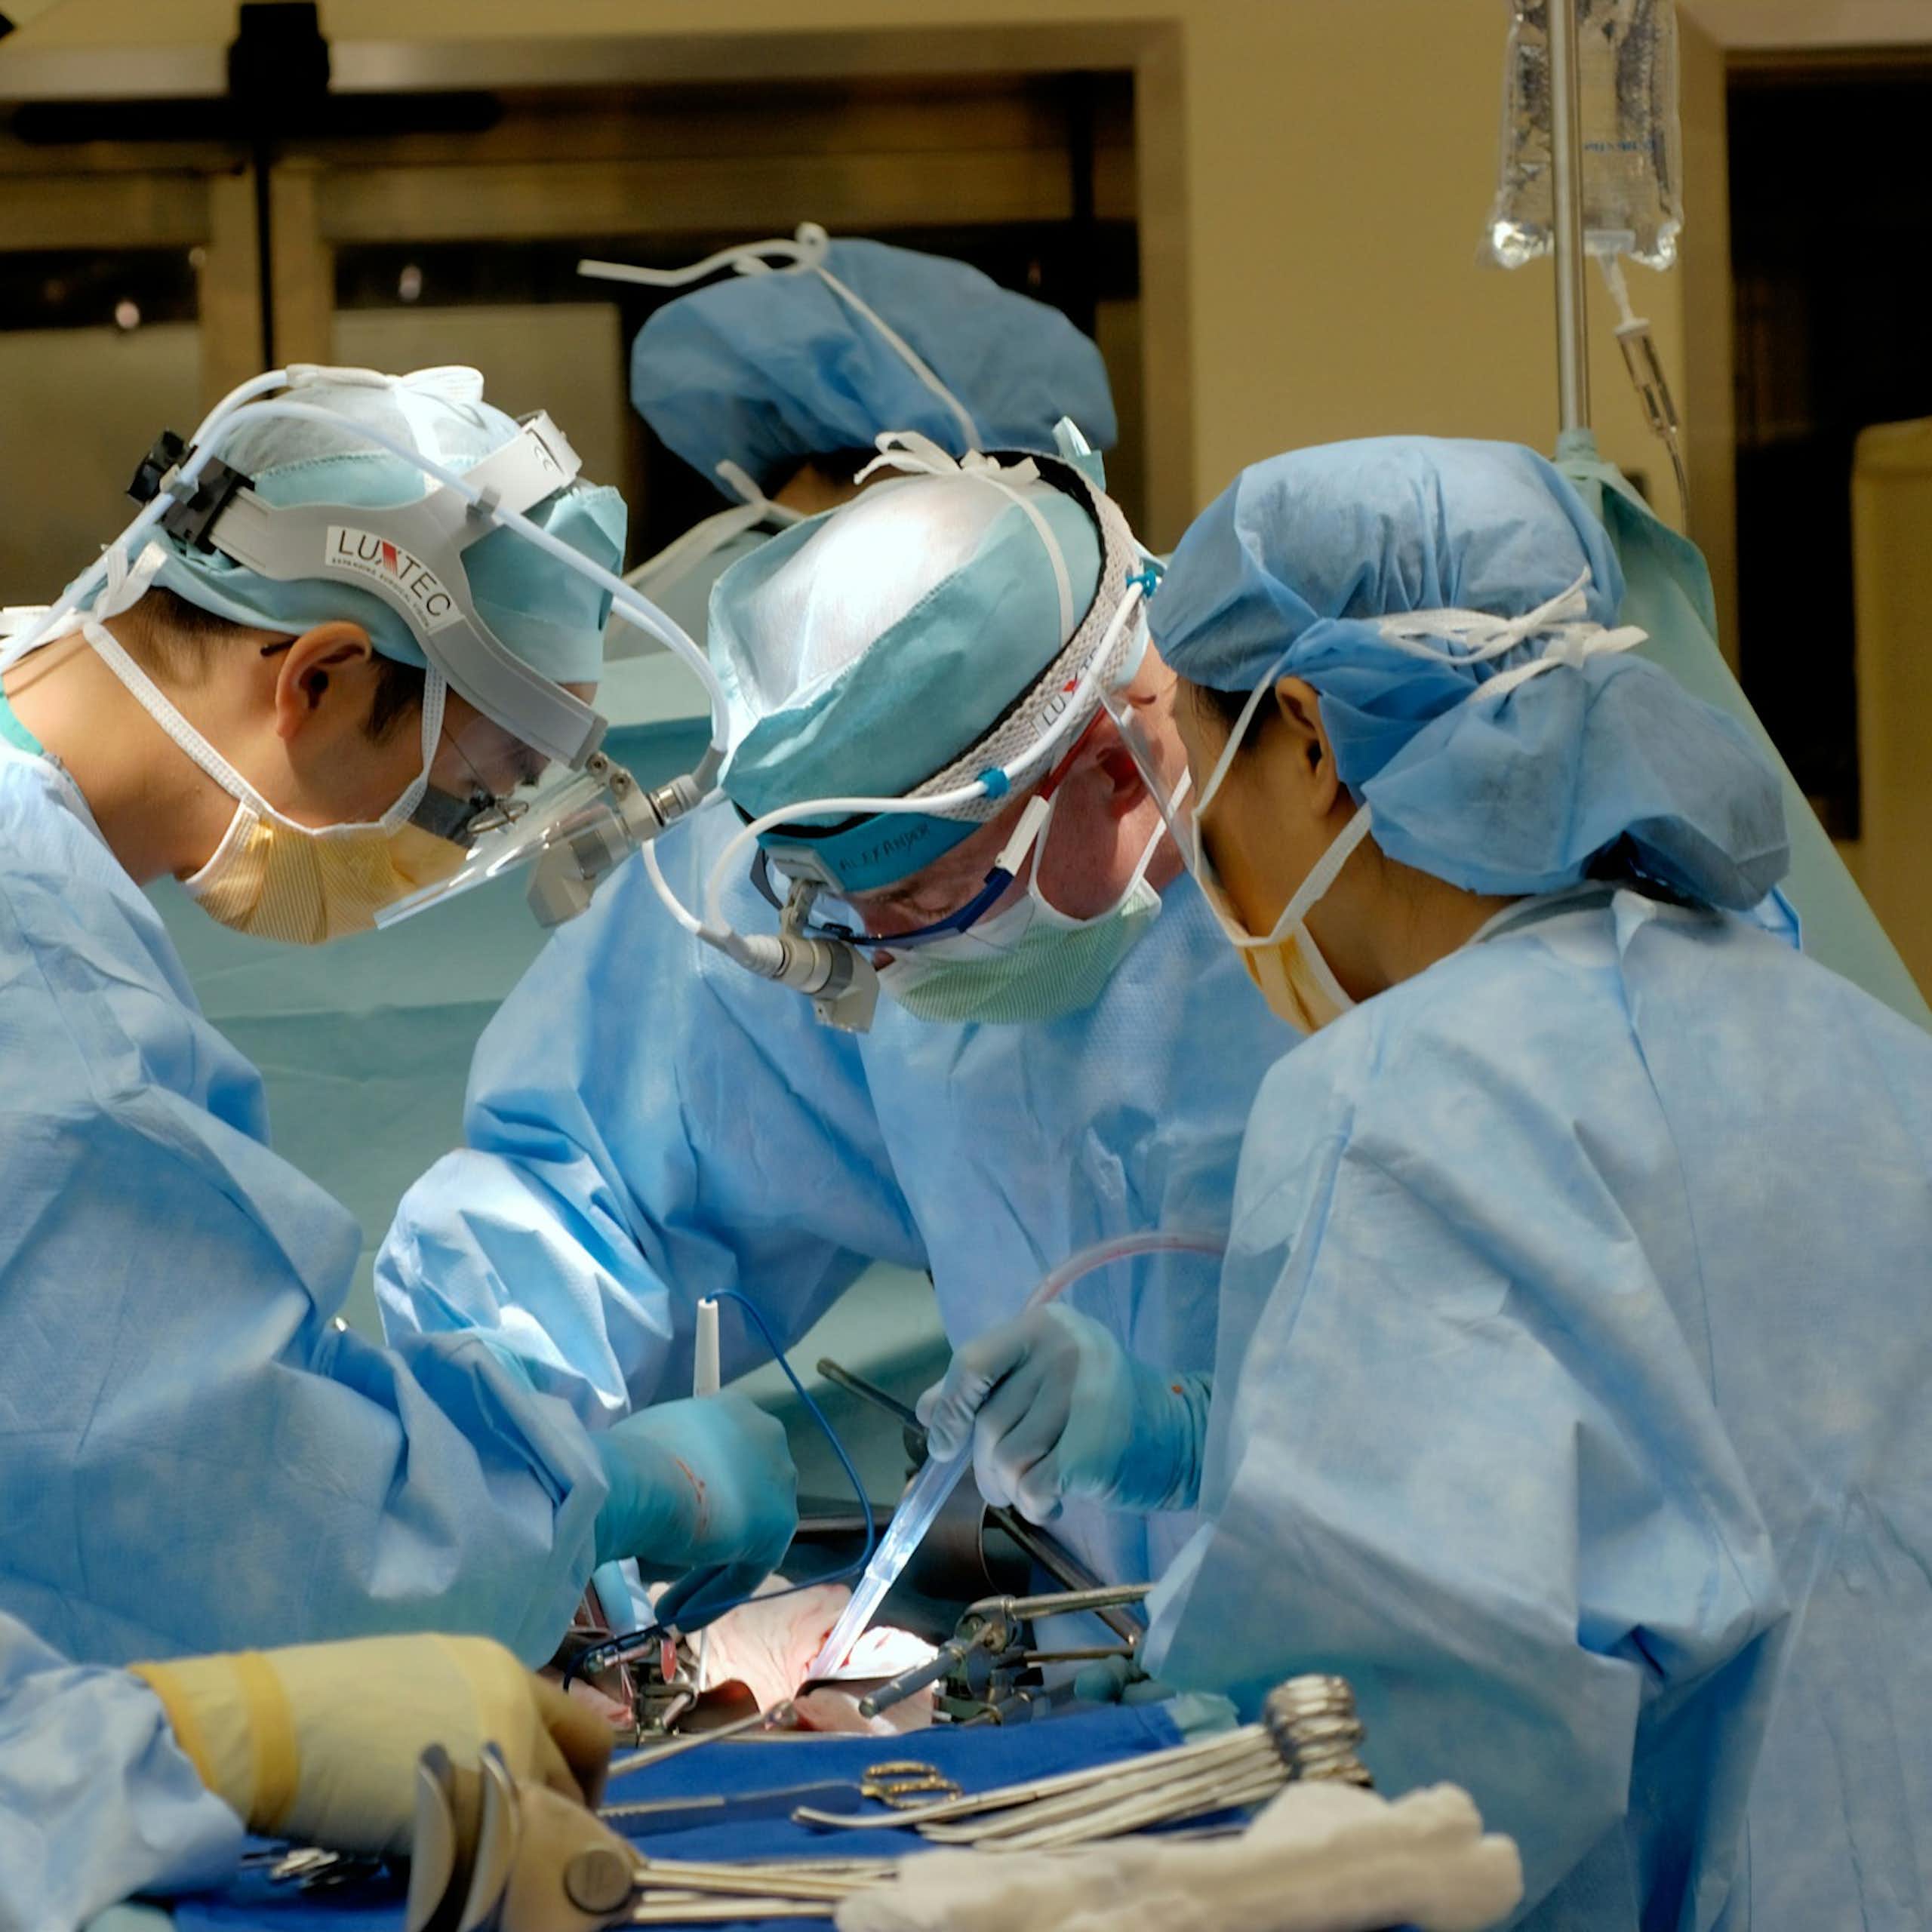 Une salle d'opération, où plusieurs professionnels de santé opèrent un patient